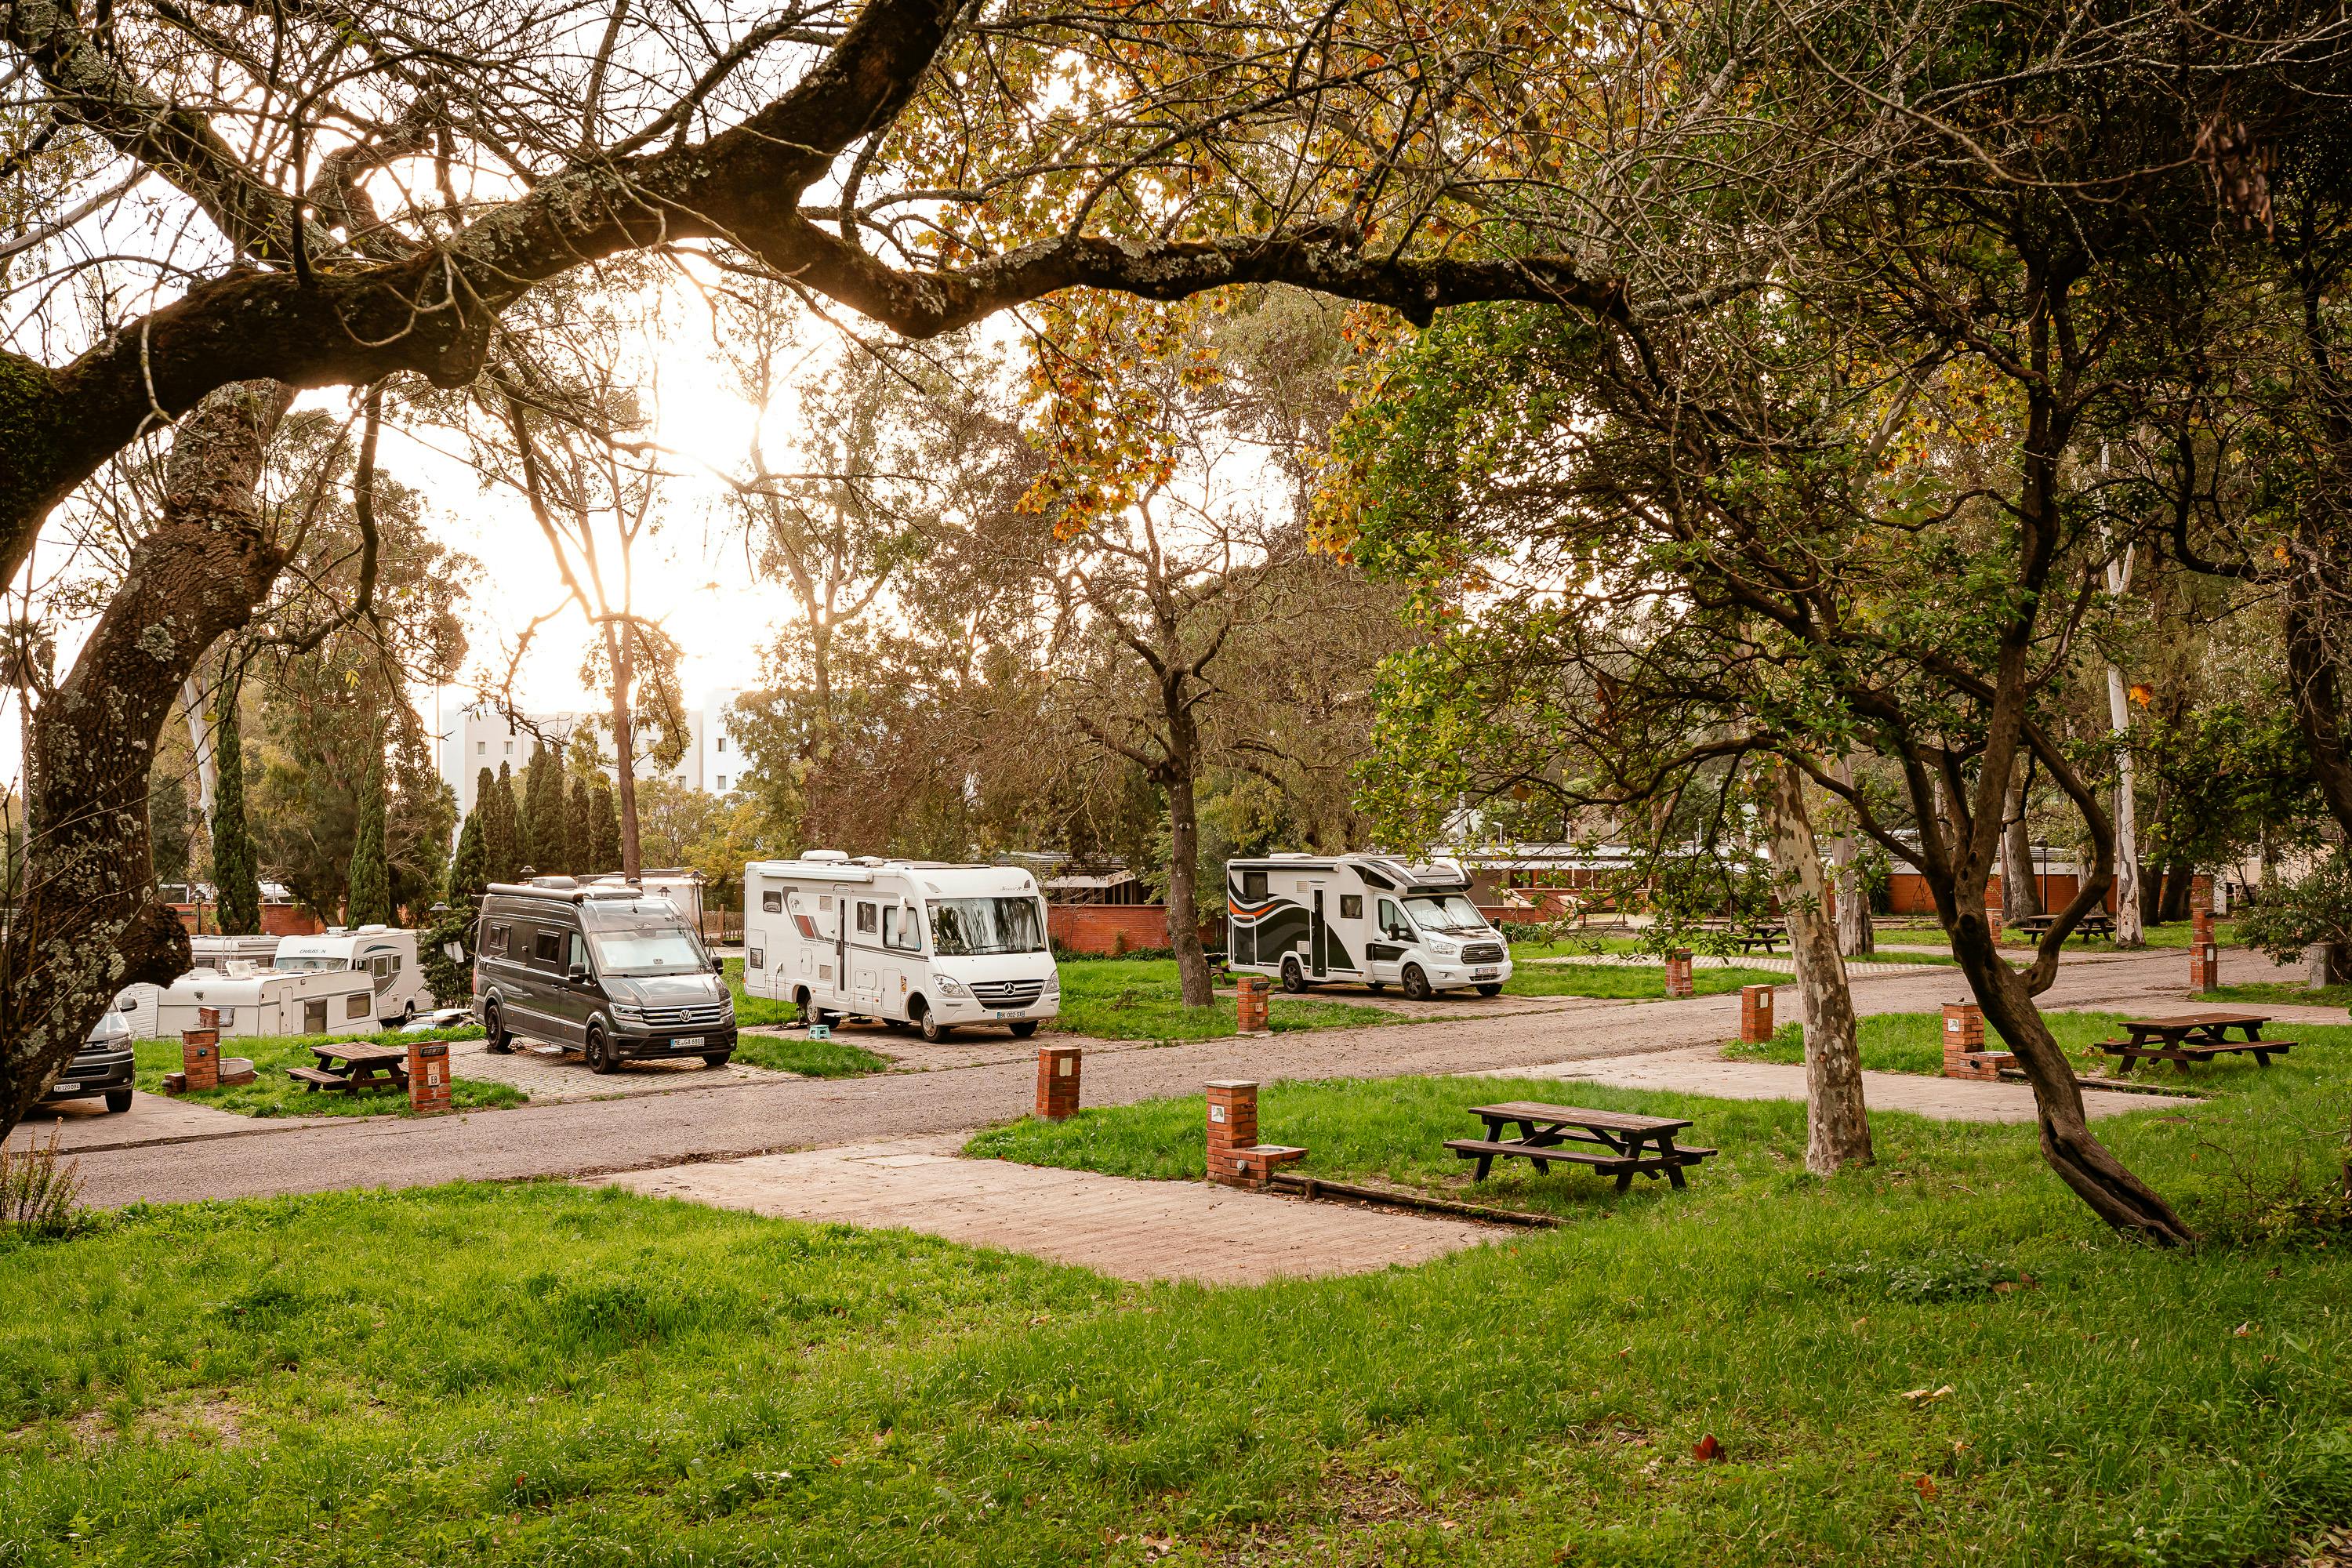 Le Lisboa Camping est un camping situé près de Lisbonne, avec un accès facile